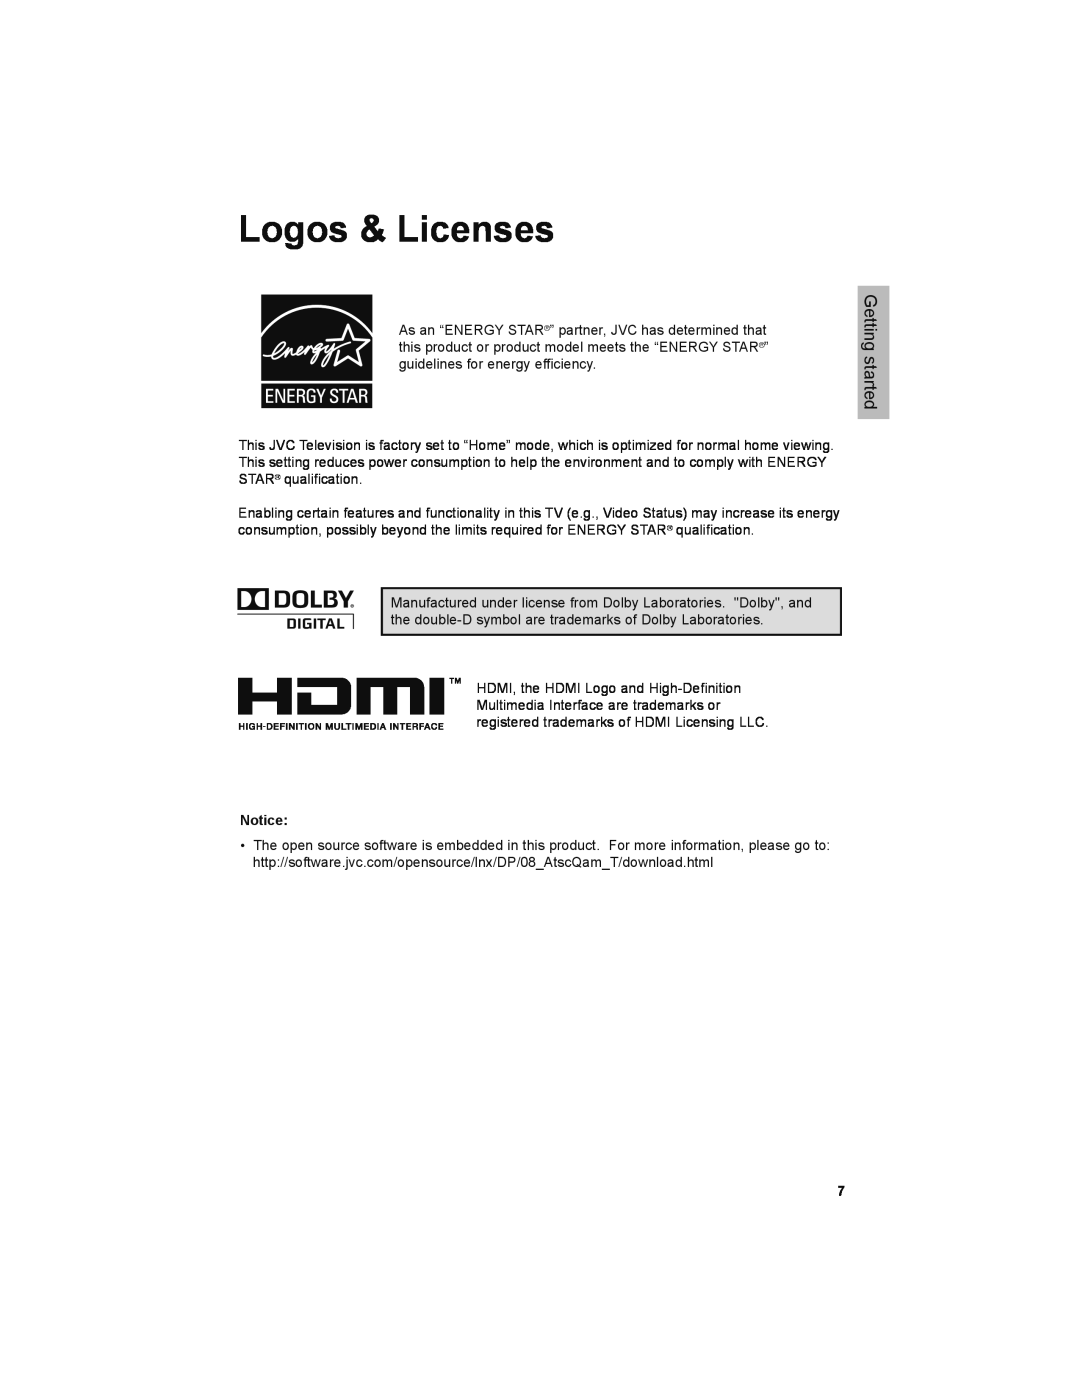 JVC LT-32JM30 manual Logos & Licenses, Getting started 